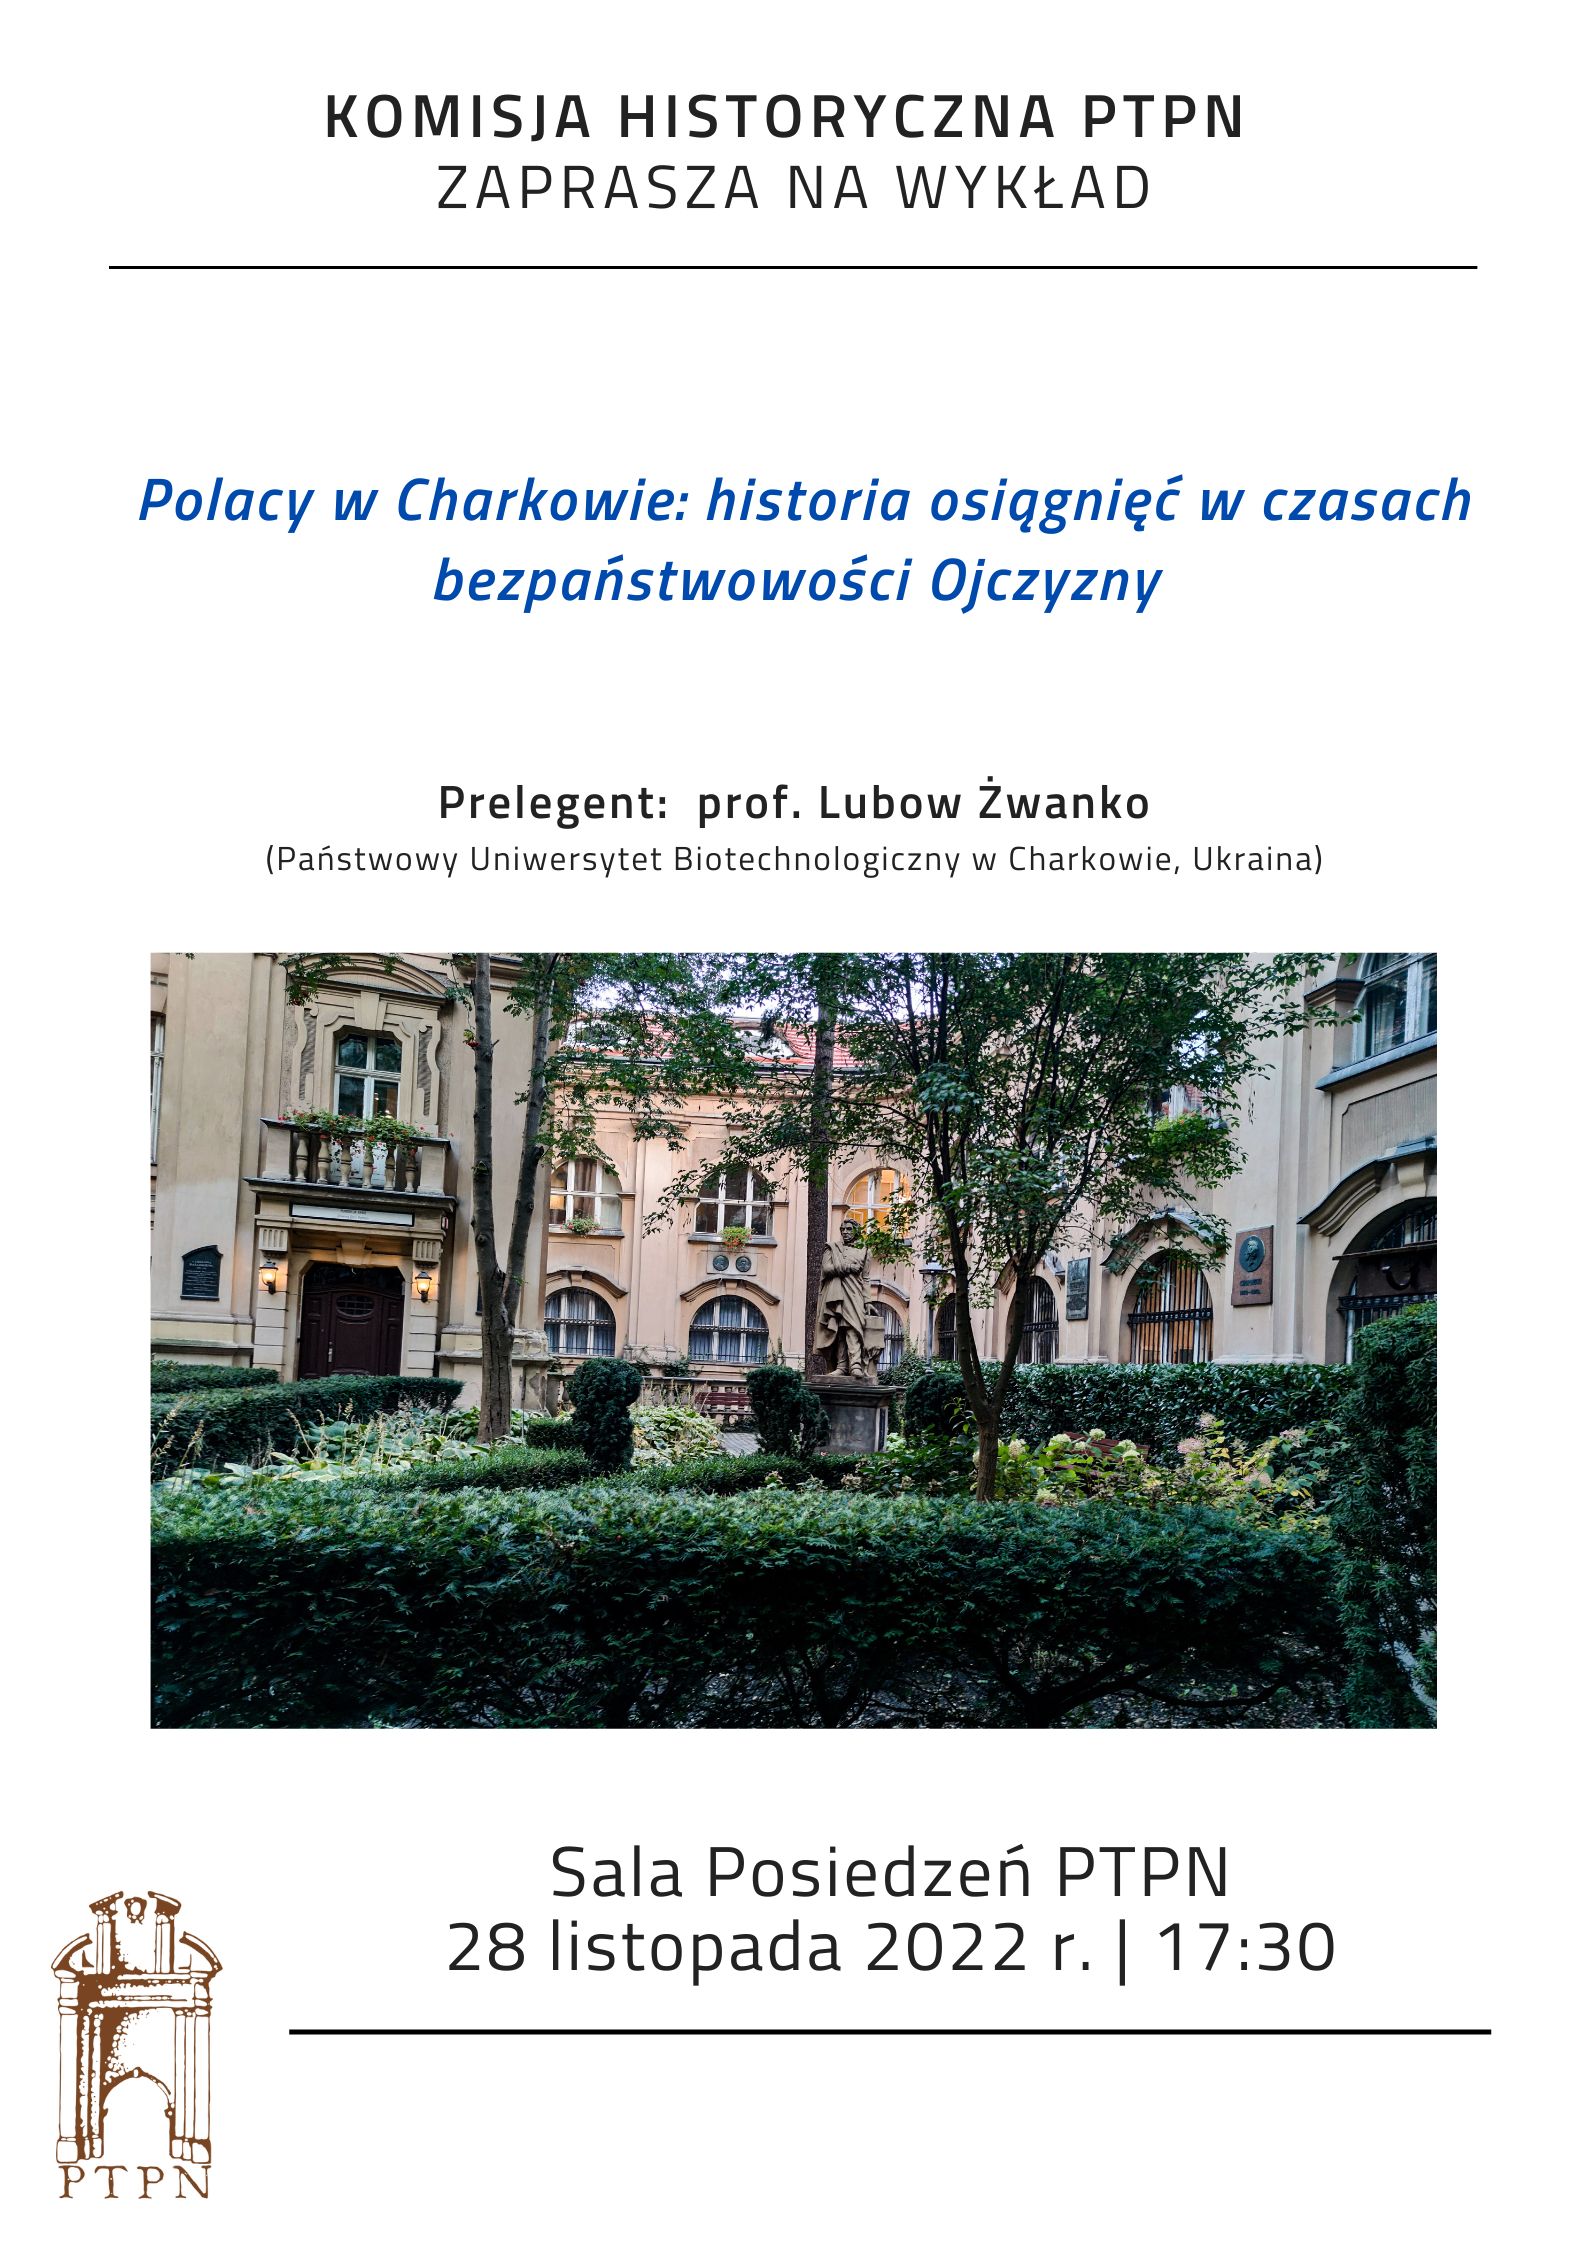 “Polacy w Charkowie: historia osiągnięć w czasach bezpaństwowości Ojczyzny” prof. Lubow Żwanko – 28 listopada 2022 r.